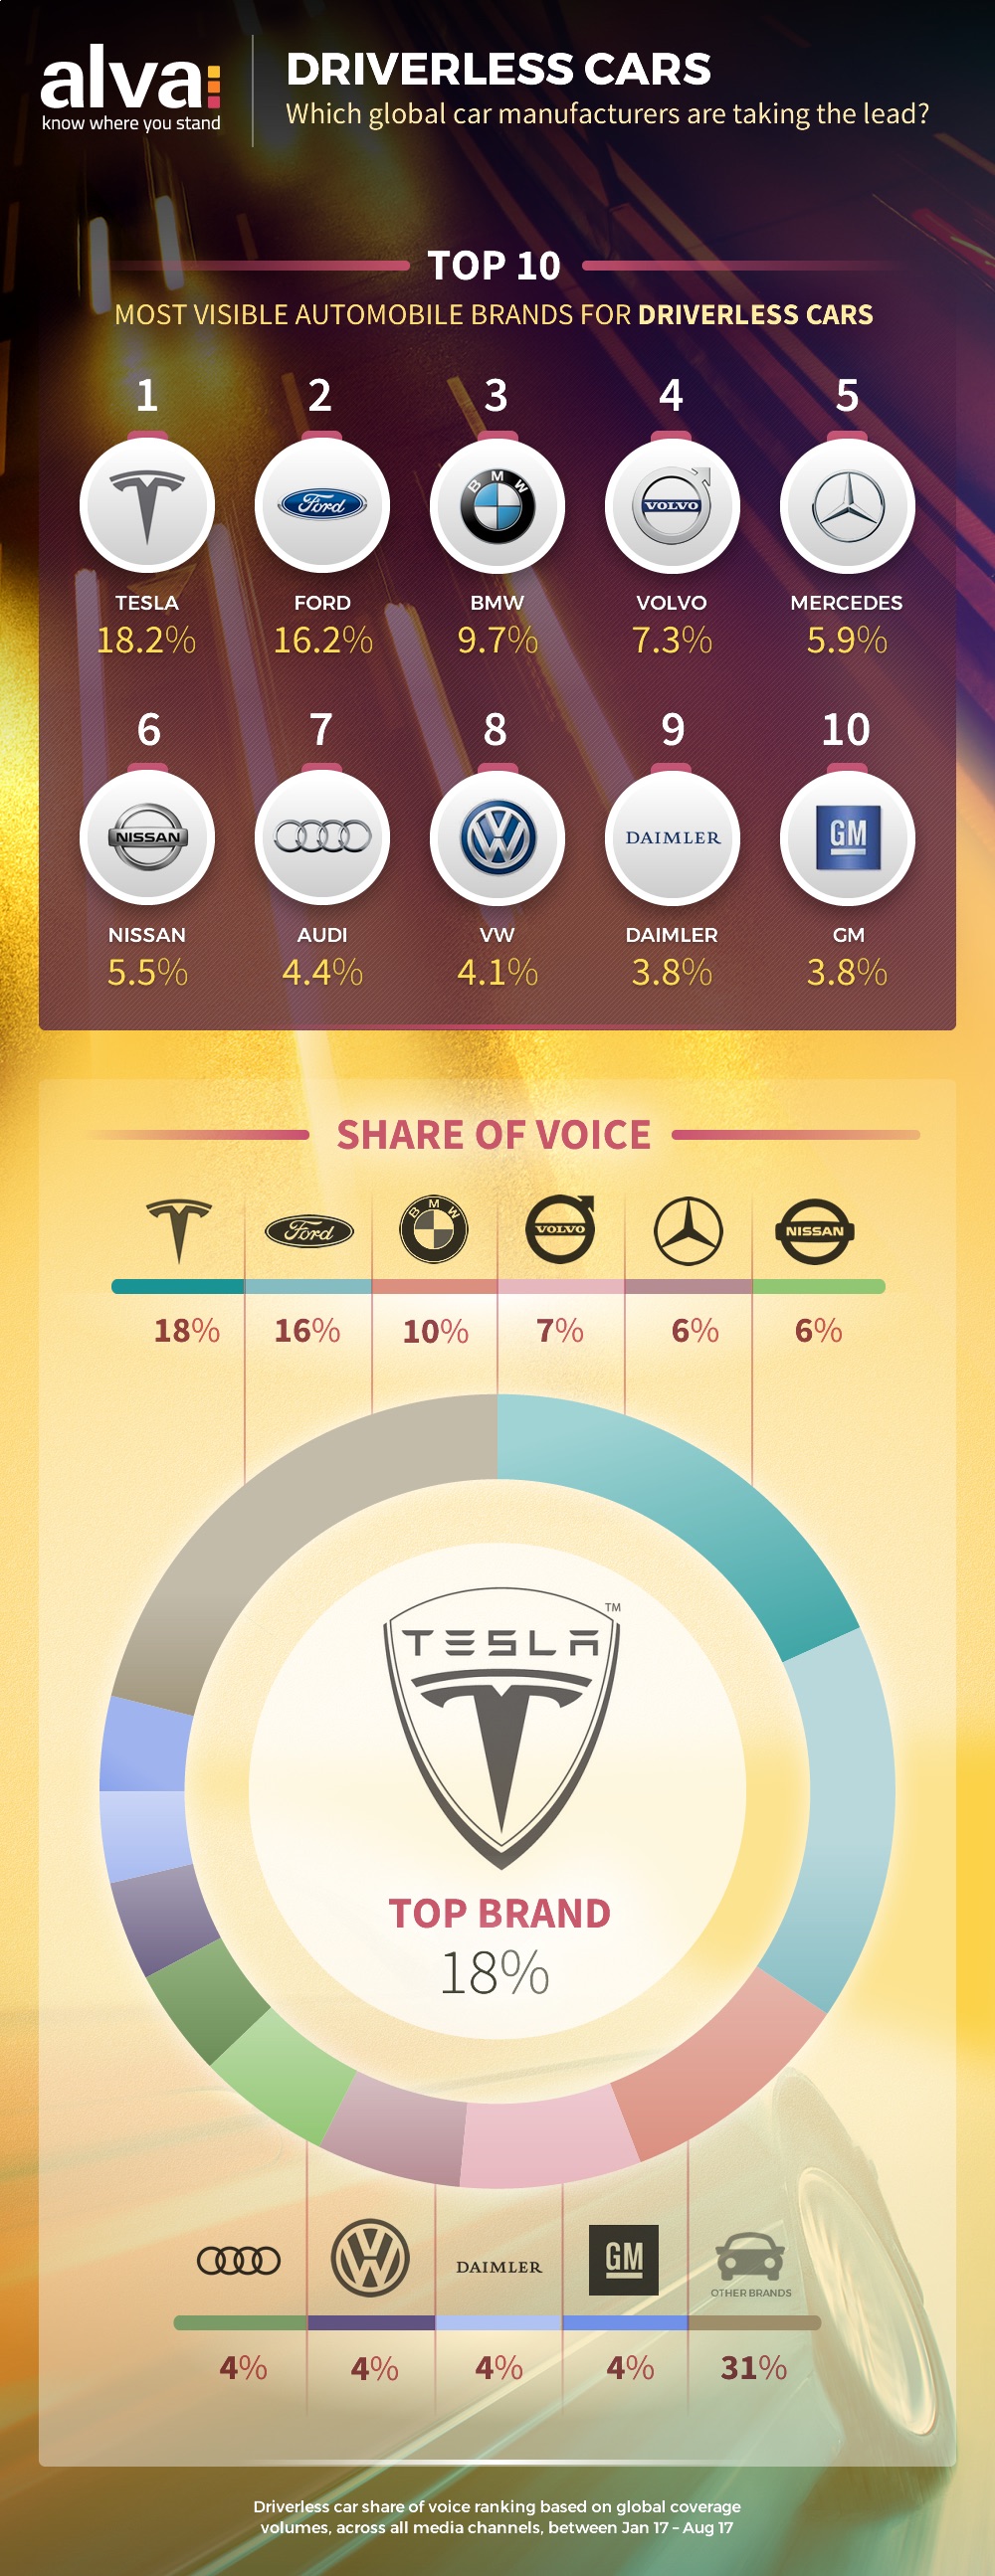 Top 10 driverless car brands